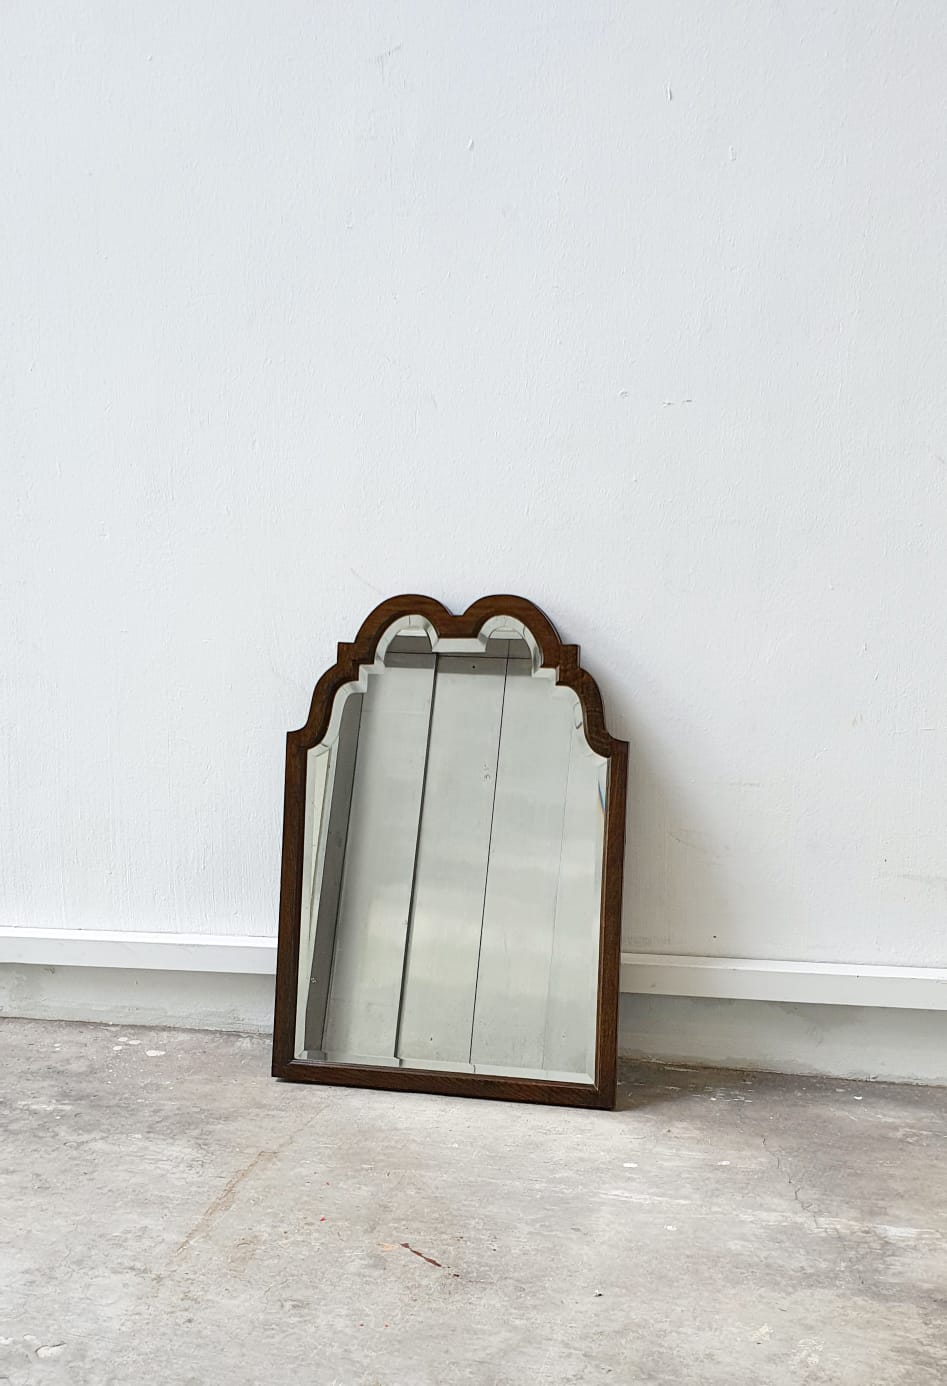 Rare 19th century big oak mirror